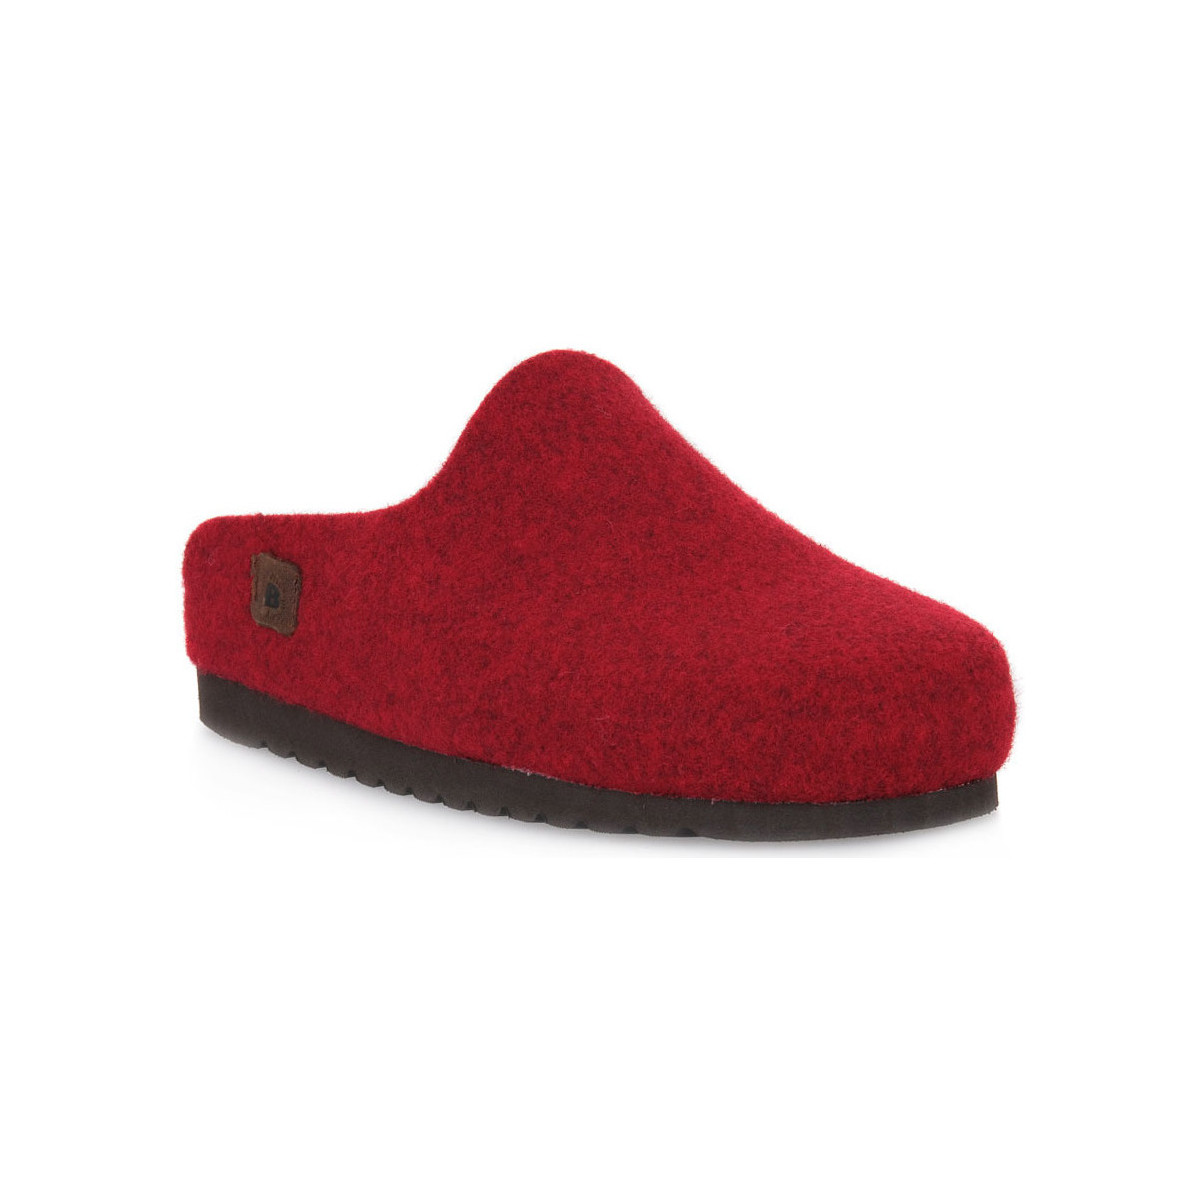 Schoenen Dames Leren slippers Bioline LOVE 3048 MERINOS Roze